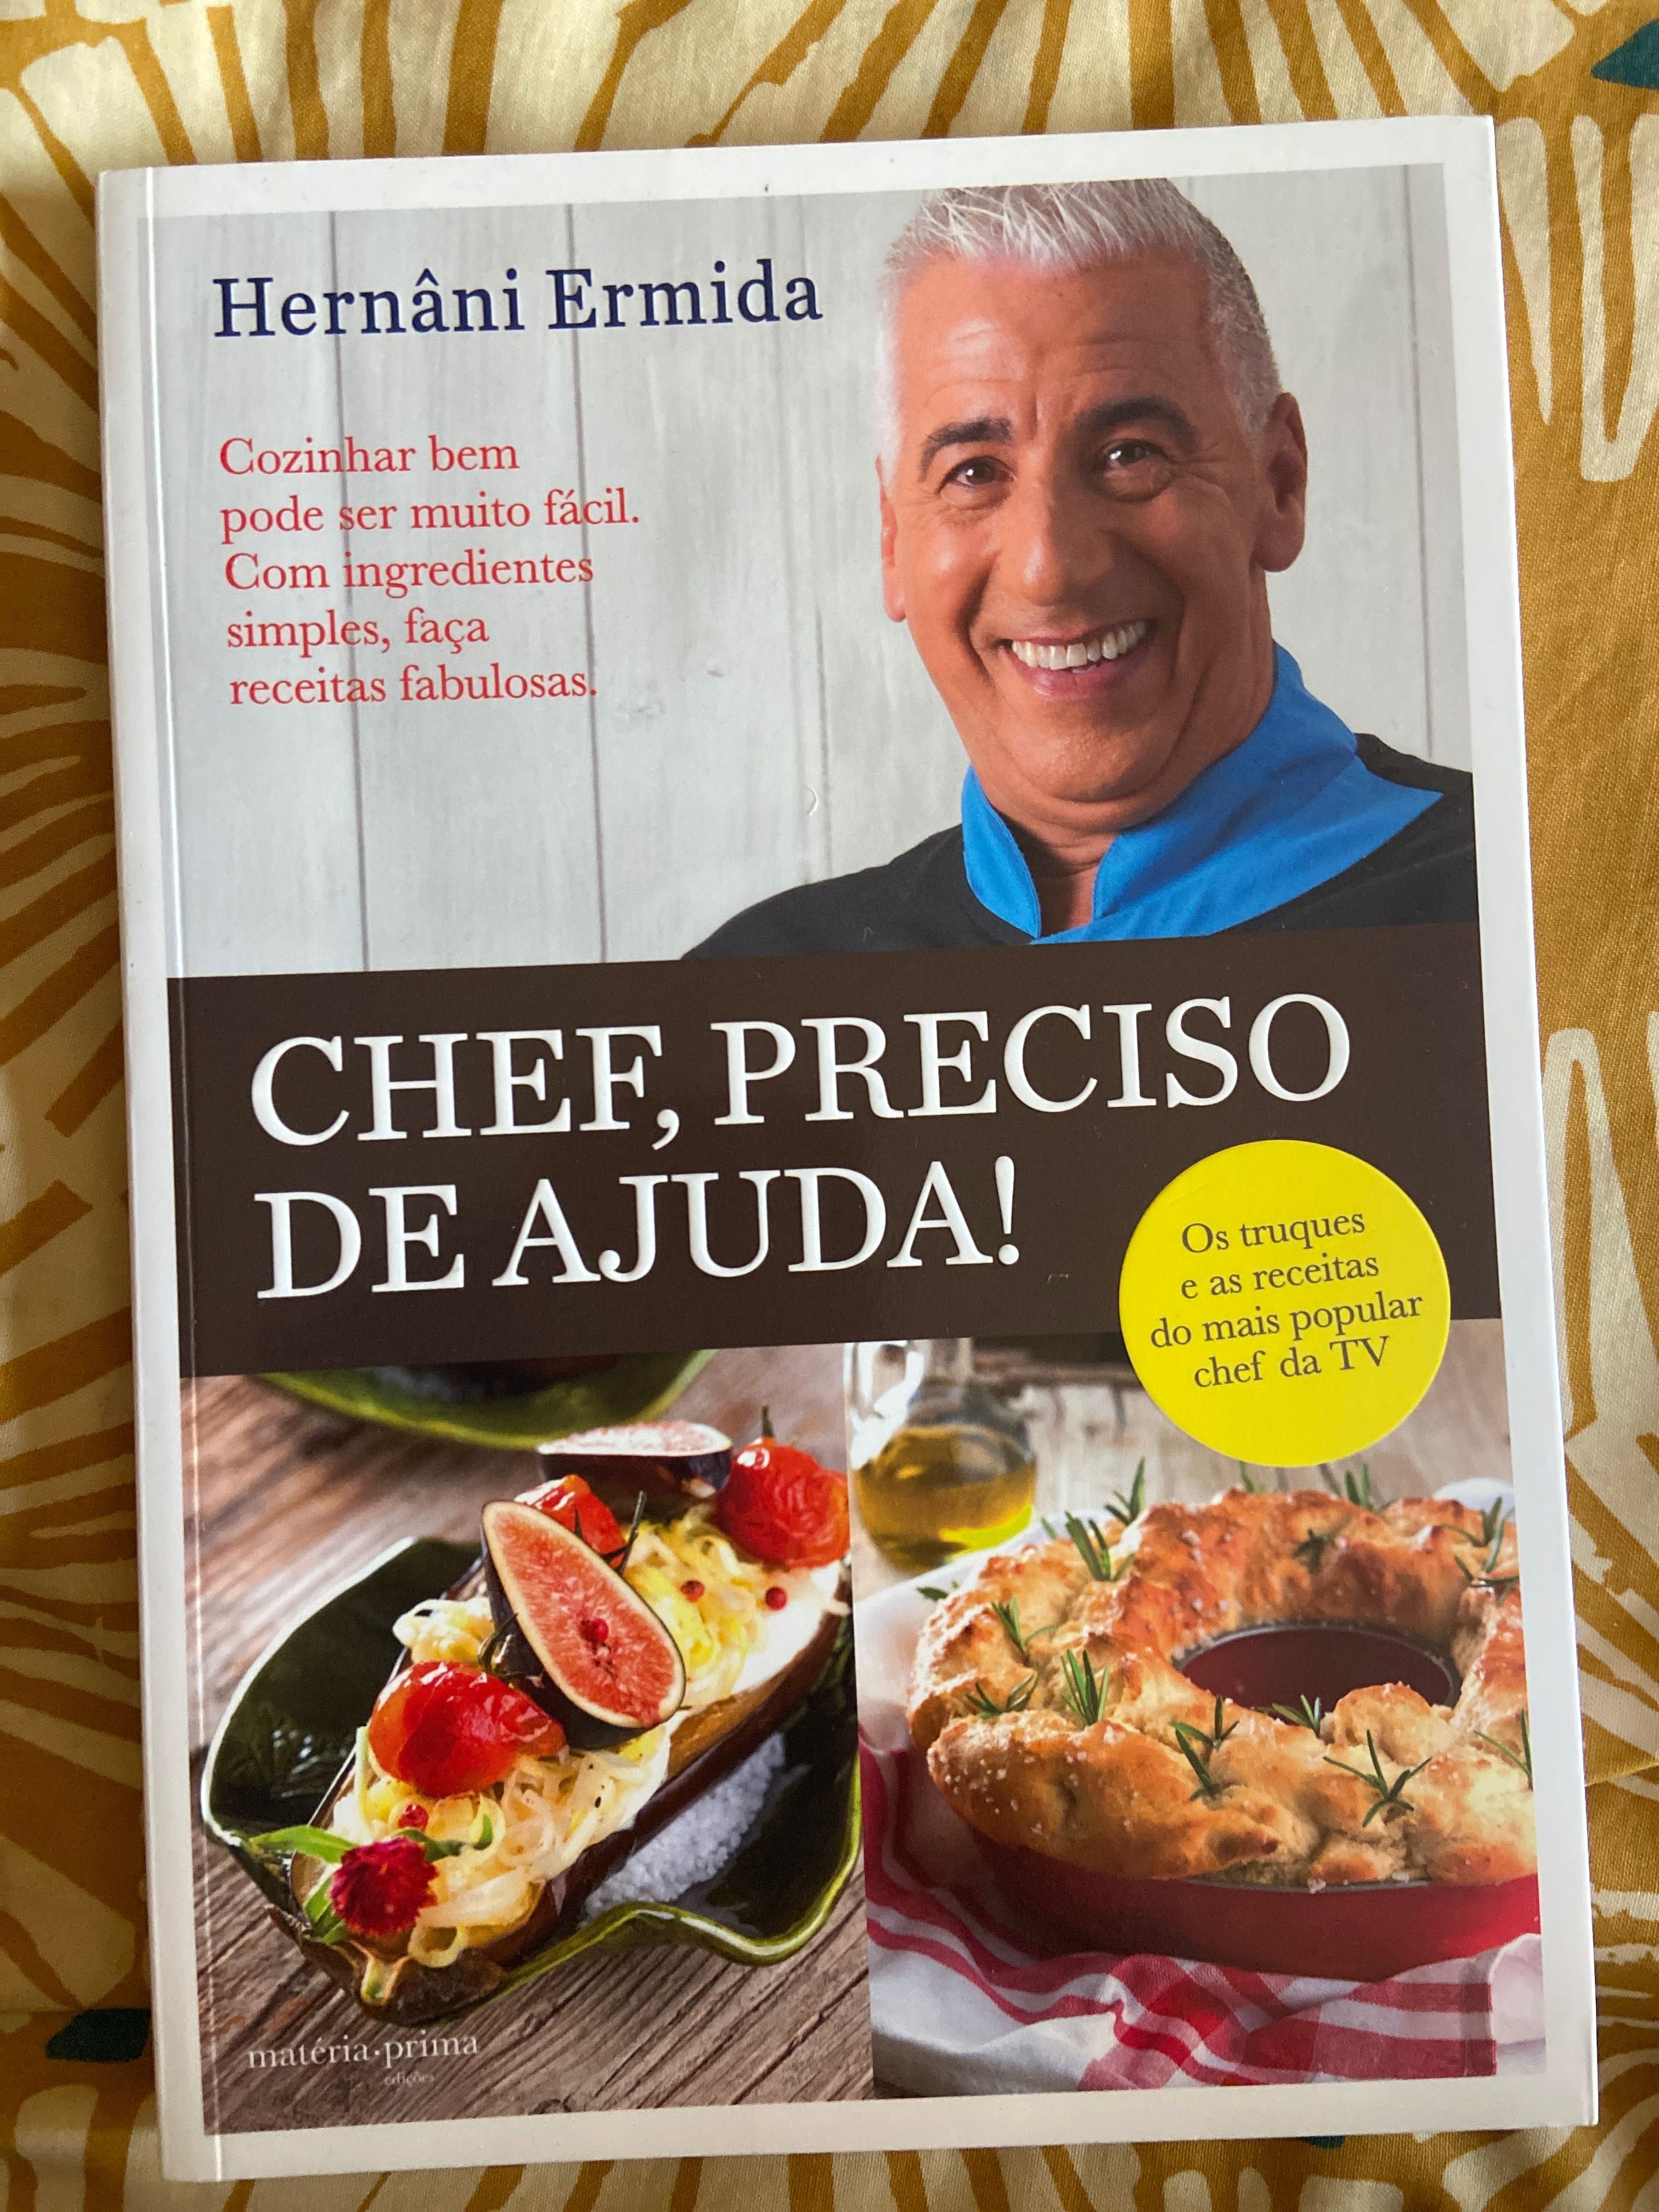 Livro “Chef, Preciso de Ajuda!” - Hernâni Ermida